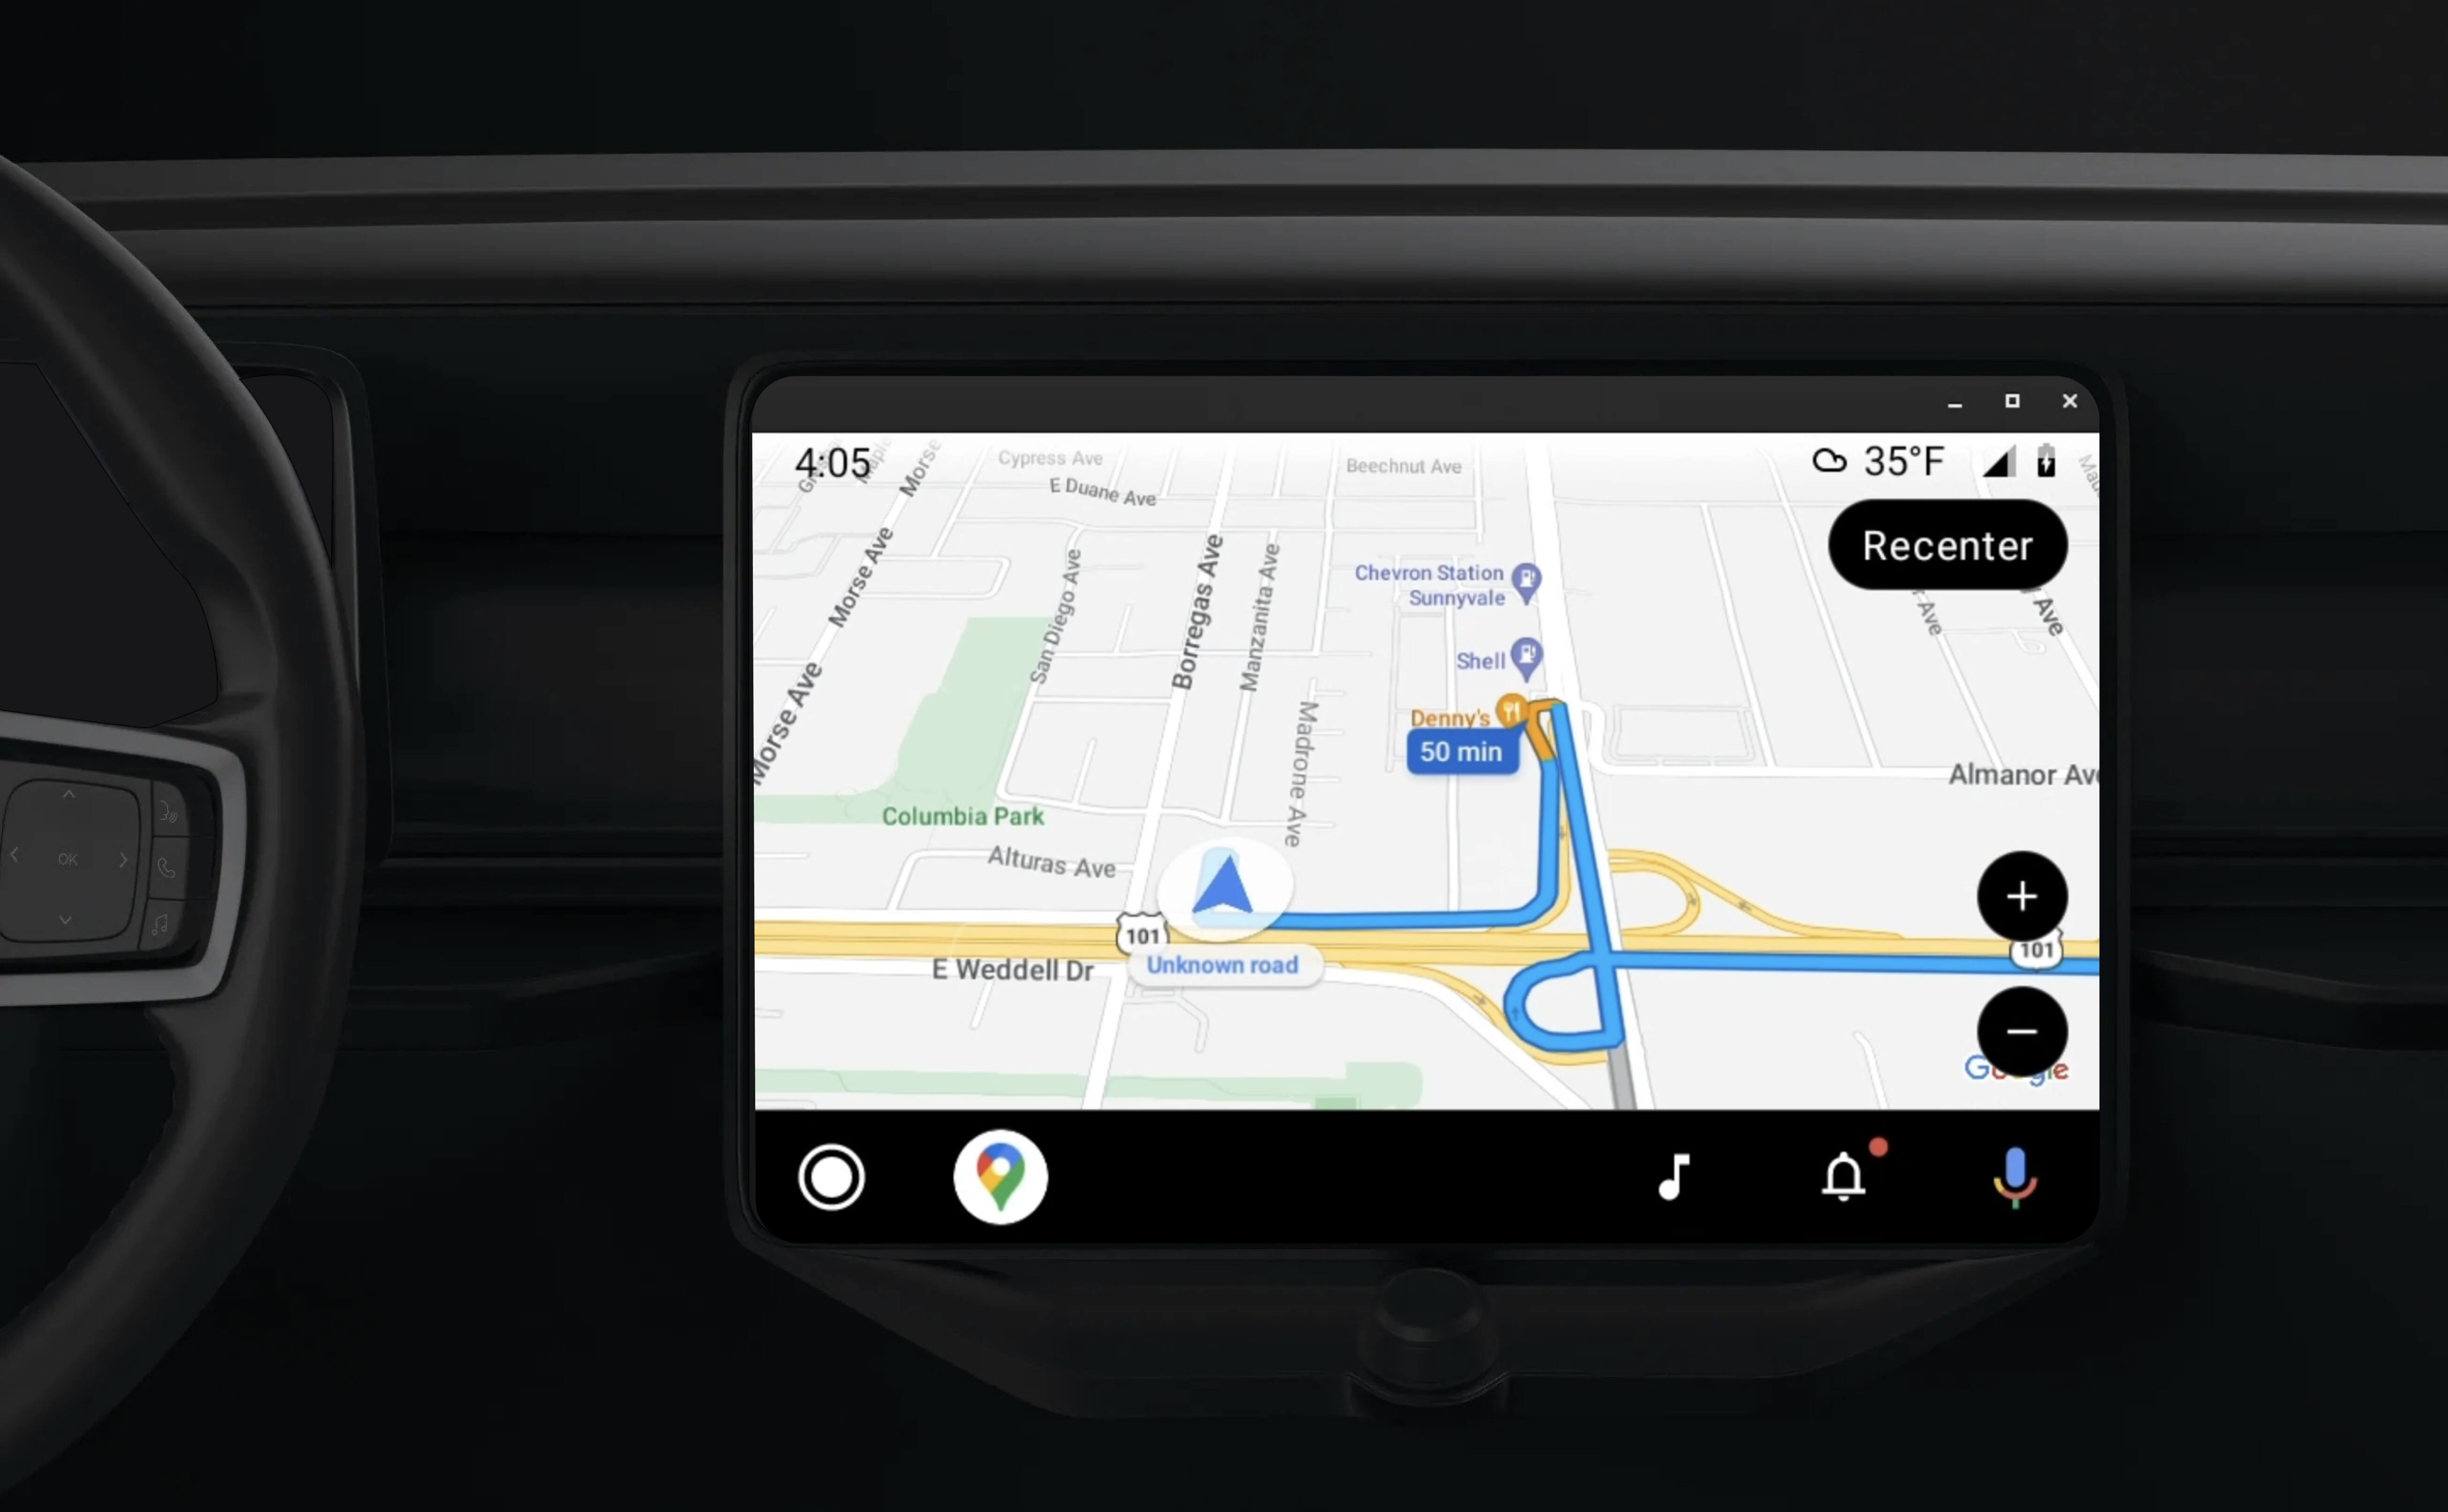 وحدة رئيسية مضمّنة في السيارة تعرض إرشادات التنقّل باستخدام تطبيق تم تفعيل ميزة Android Auto عليه